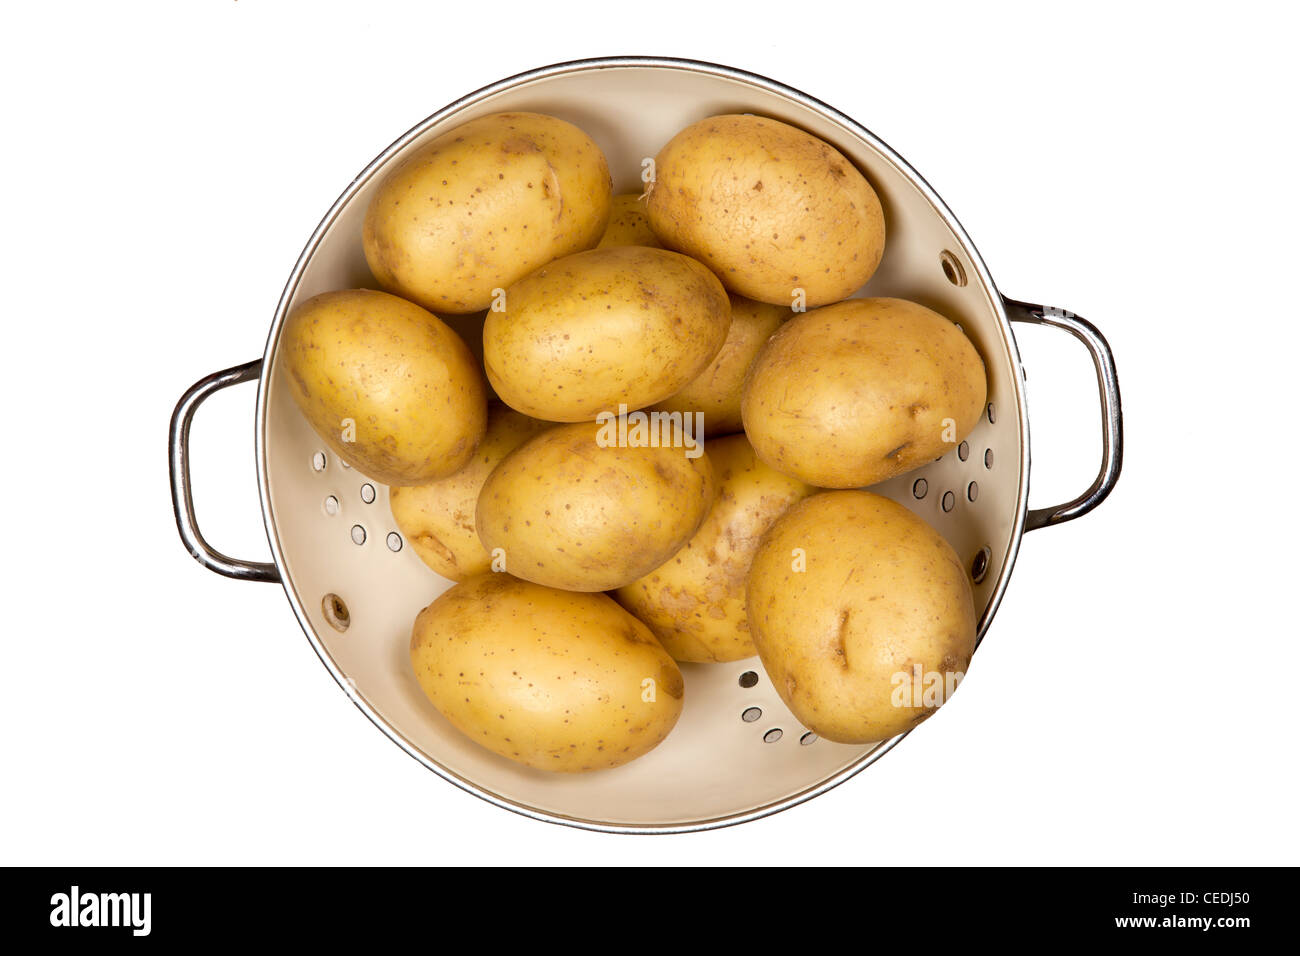 Les pommes de terre dans une passoire Banque D'Images